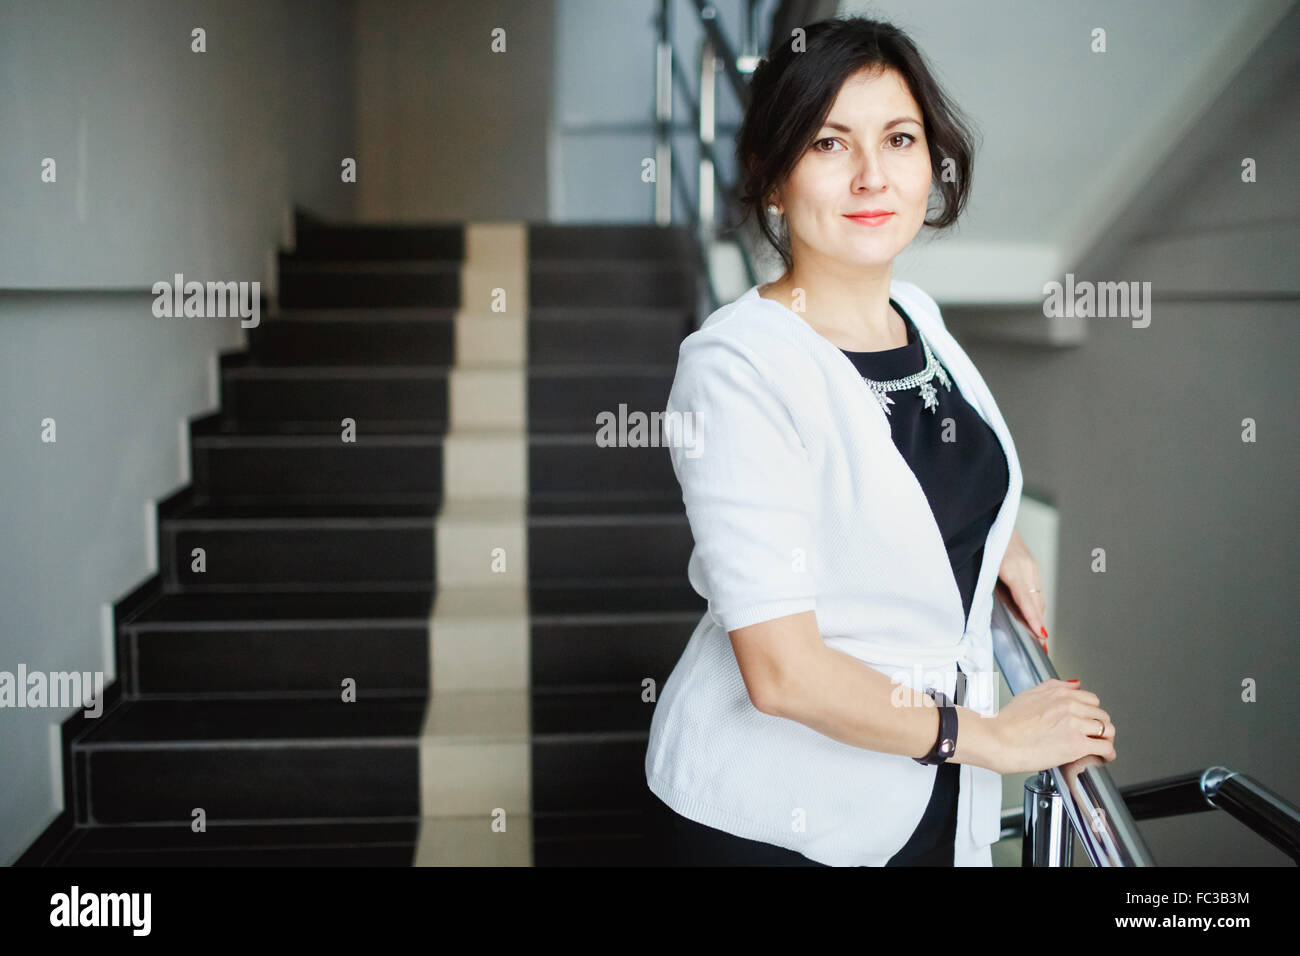 Erfolgreiche attraktive Brünette mit freundlichen Augen stehend auf der Treppe des Bürogebäudes, während einer Pause bei der Arbeit. Weiße Jacke und strengen schwarzen Kleid Schmuck tragen. Nette junge Frau posiert. Stockfoto